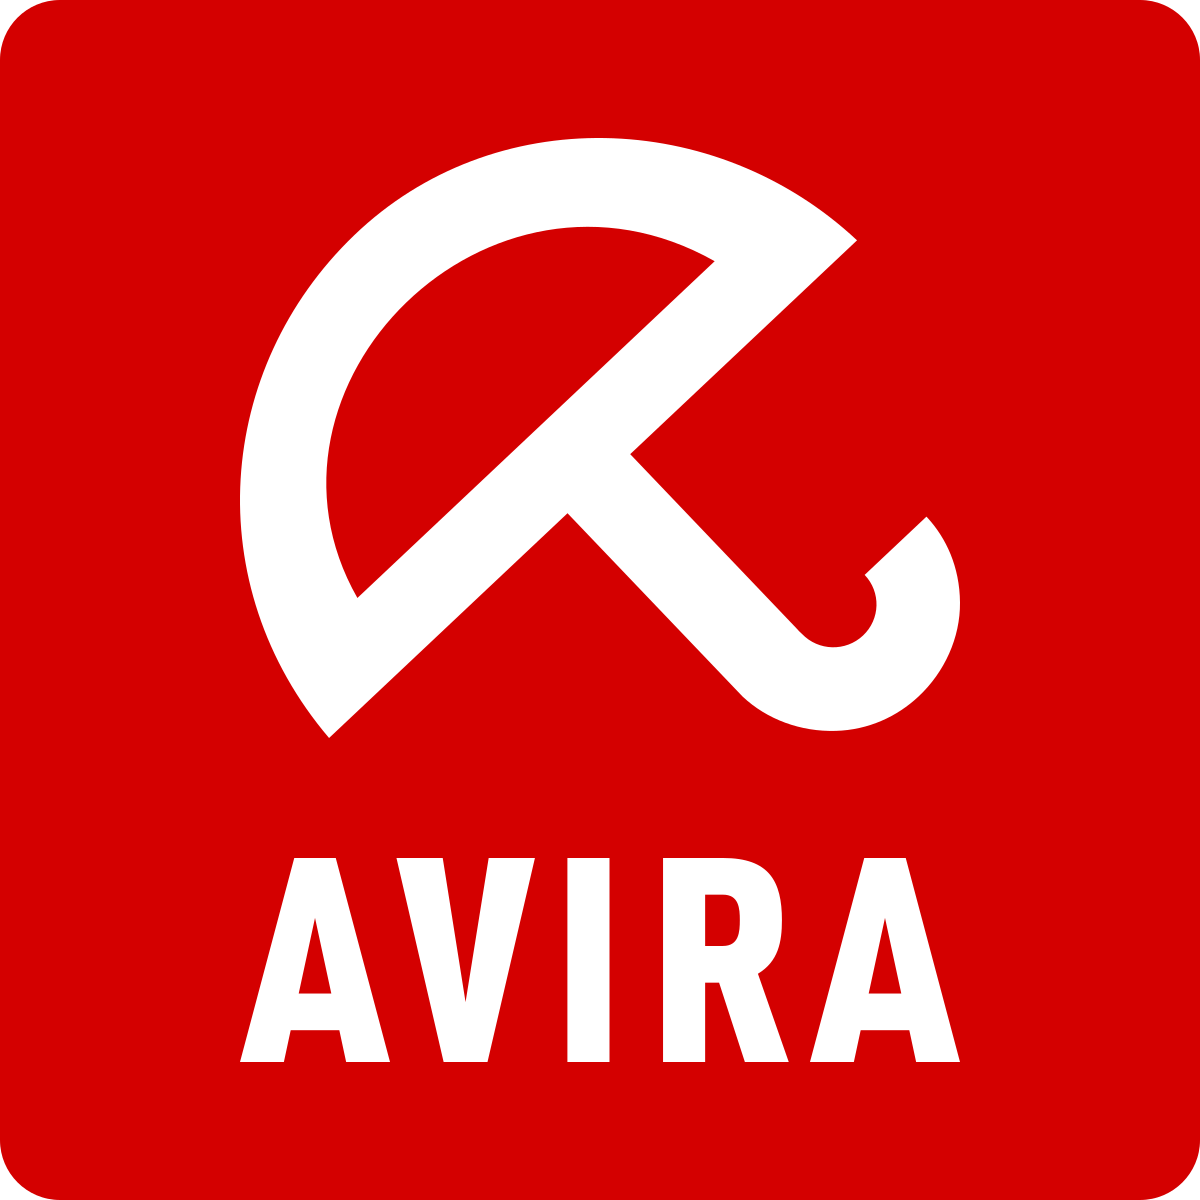 avira free full option antivirus download